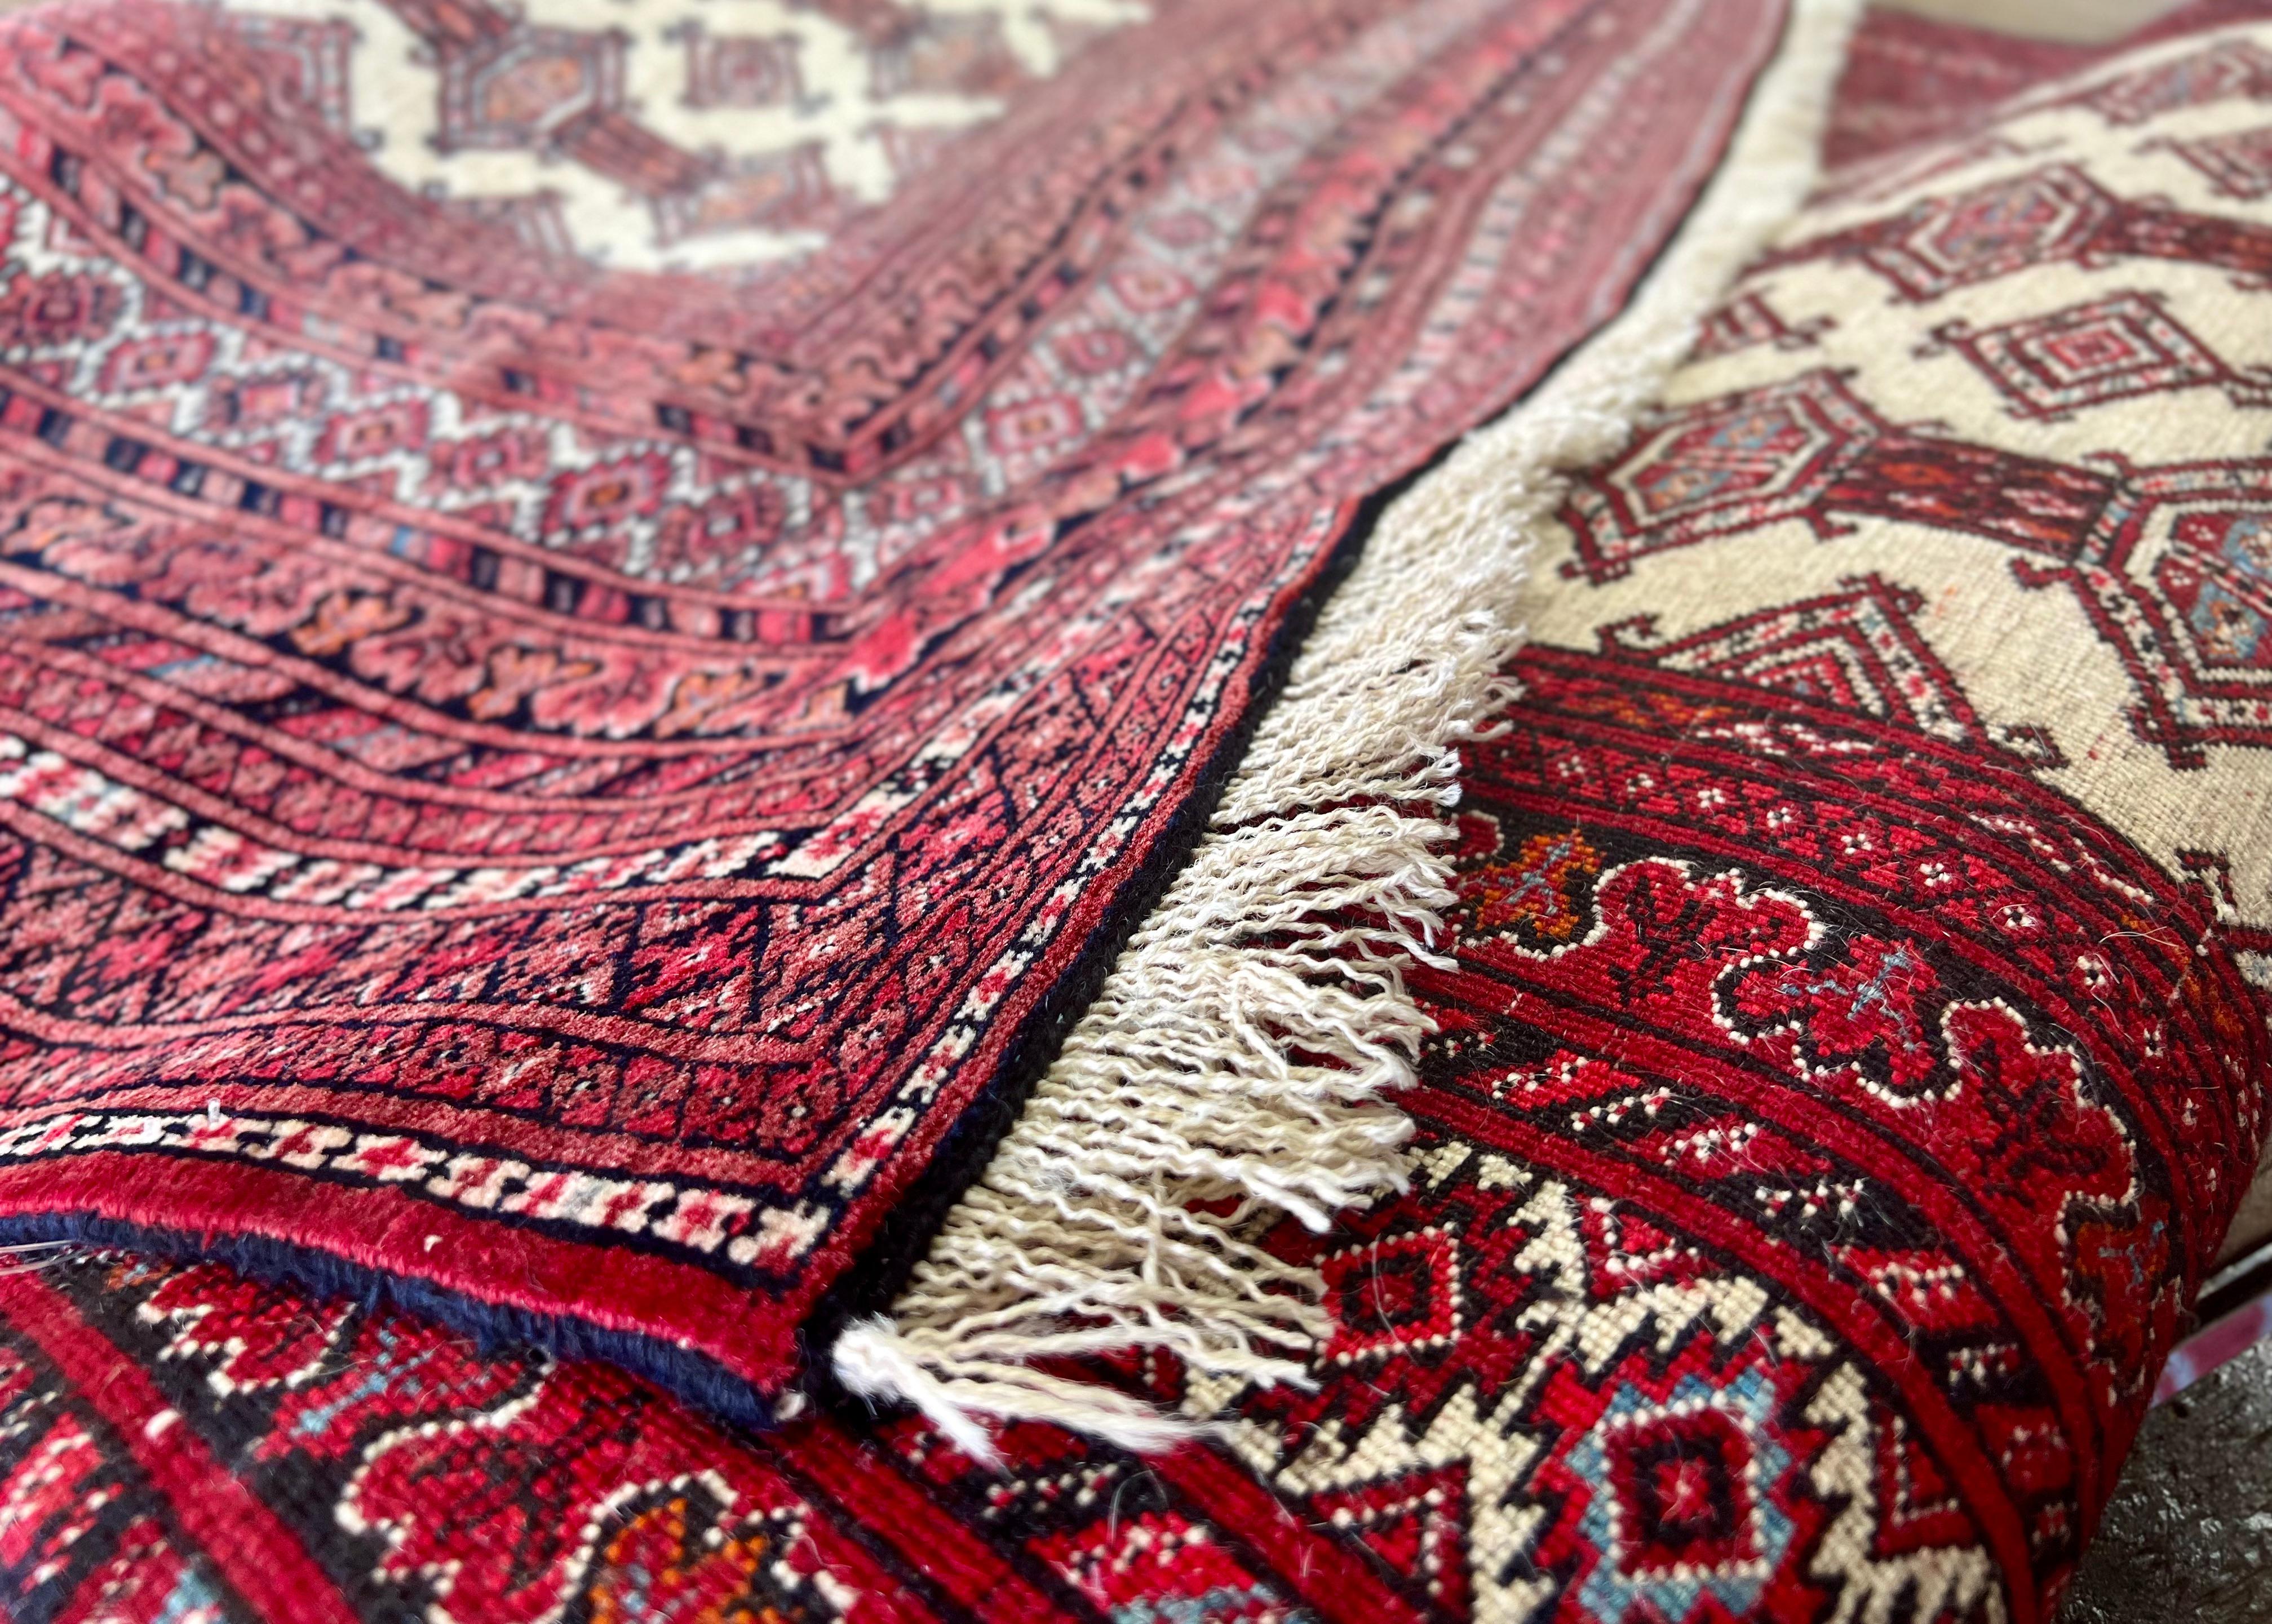 Securing fringe on an oriental rug.